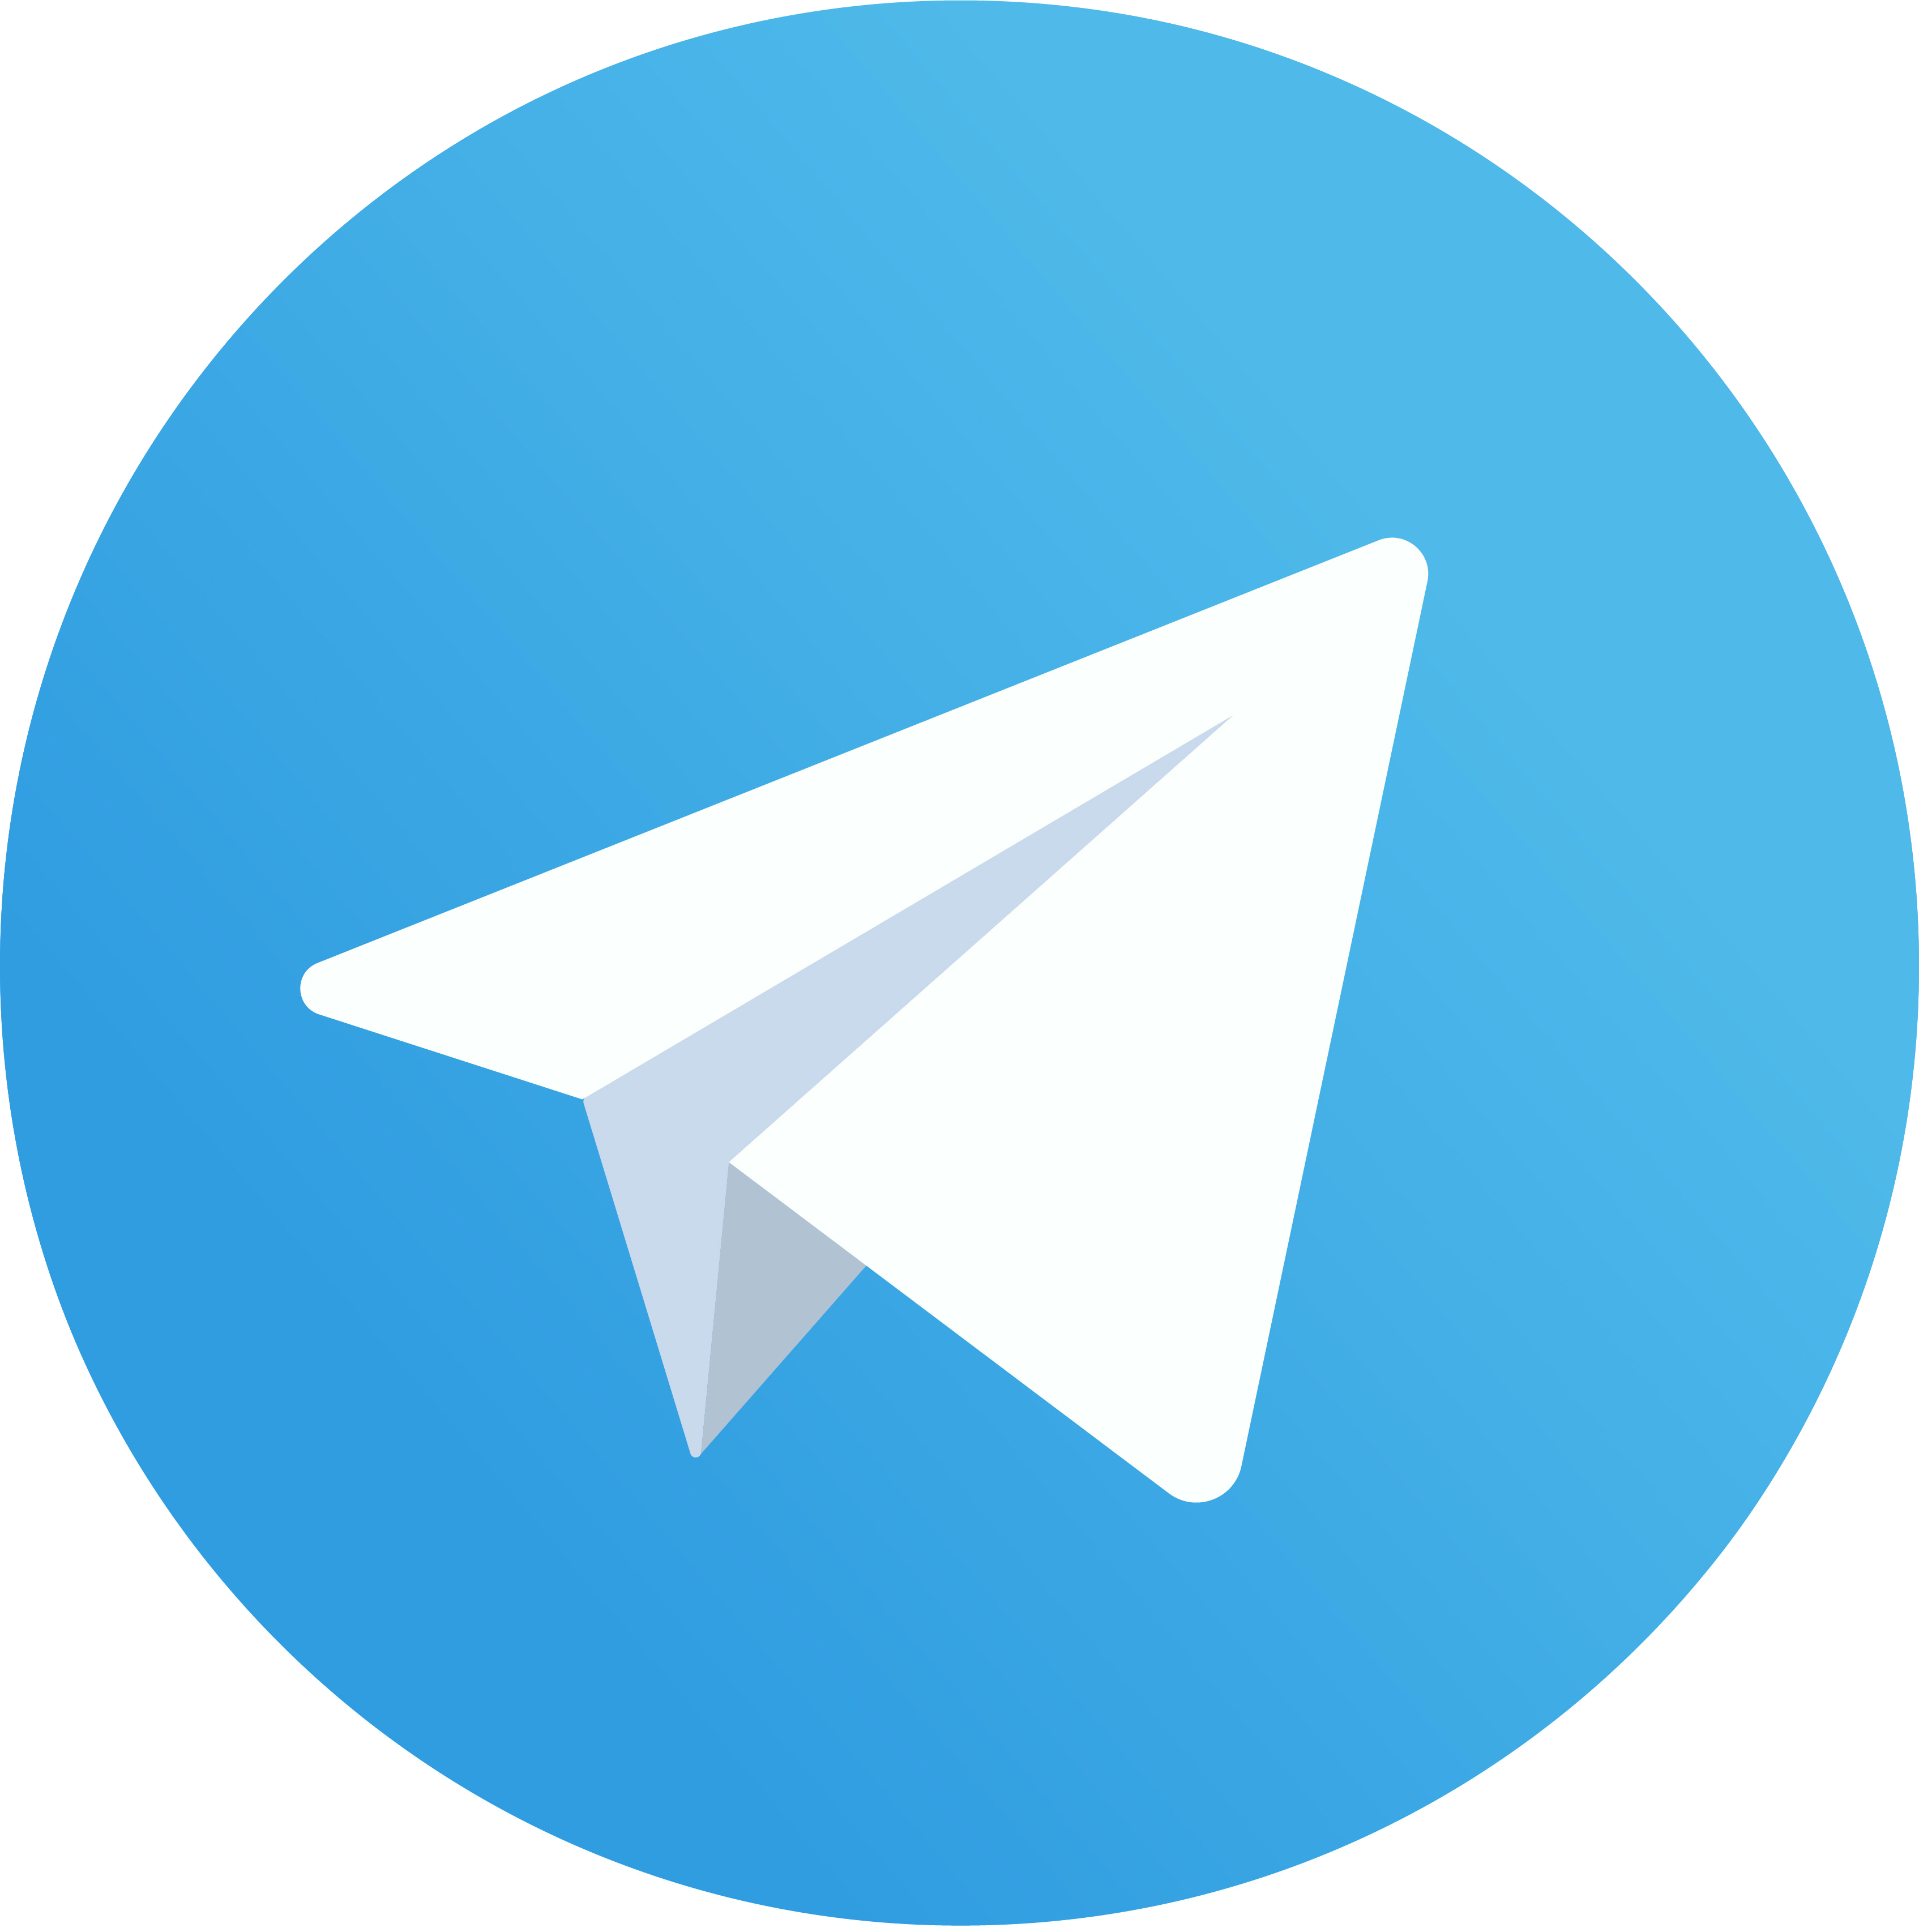 Еще больше пользы для вас и вашего бизнеса каждый день в нашем Telegram-канале